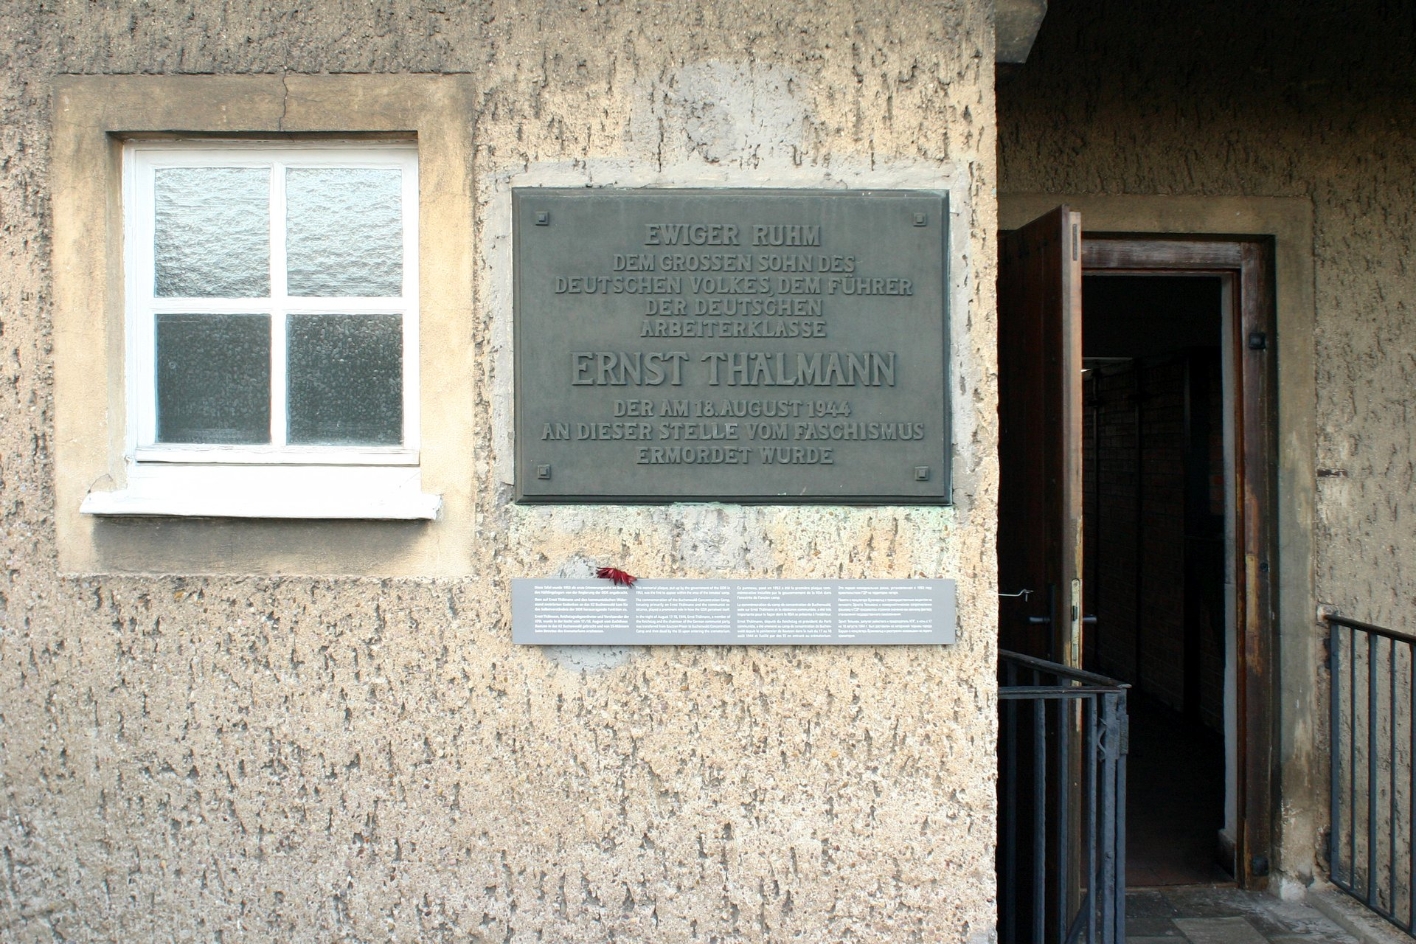 Gedenktafel an der Außenwand des Krematoriums der Gedenkstätte Buchenwald. Der Text lautet: Ewiger Ruhm dem Sohn des deutschen Volkes, dem Führer der deutschen Arbeiterklasse Ernst Thälmann, der am 18. August 1944 an dieser Stelle vom Faschismus ermordet wurde.